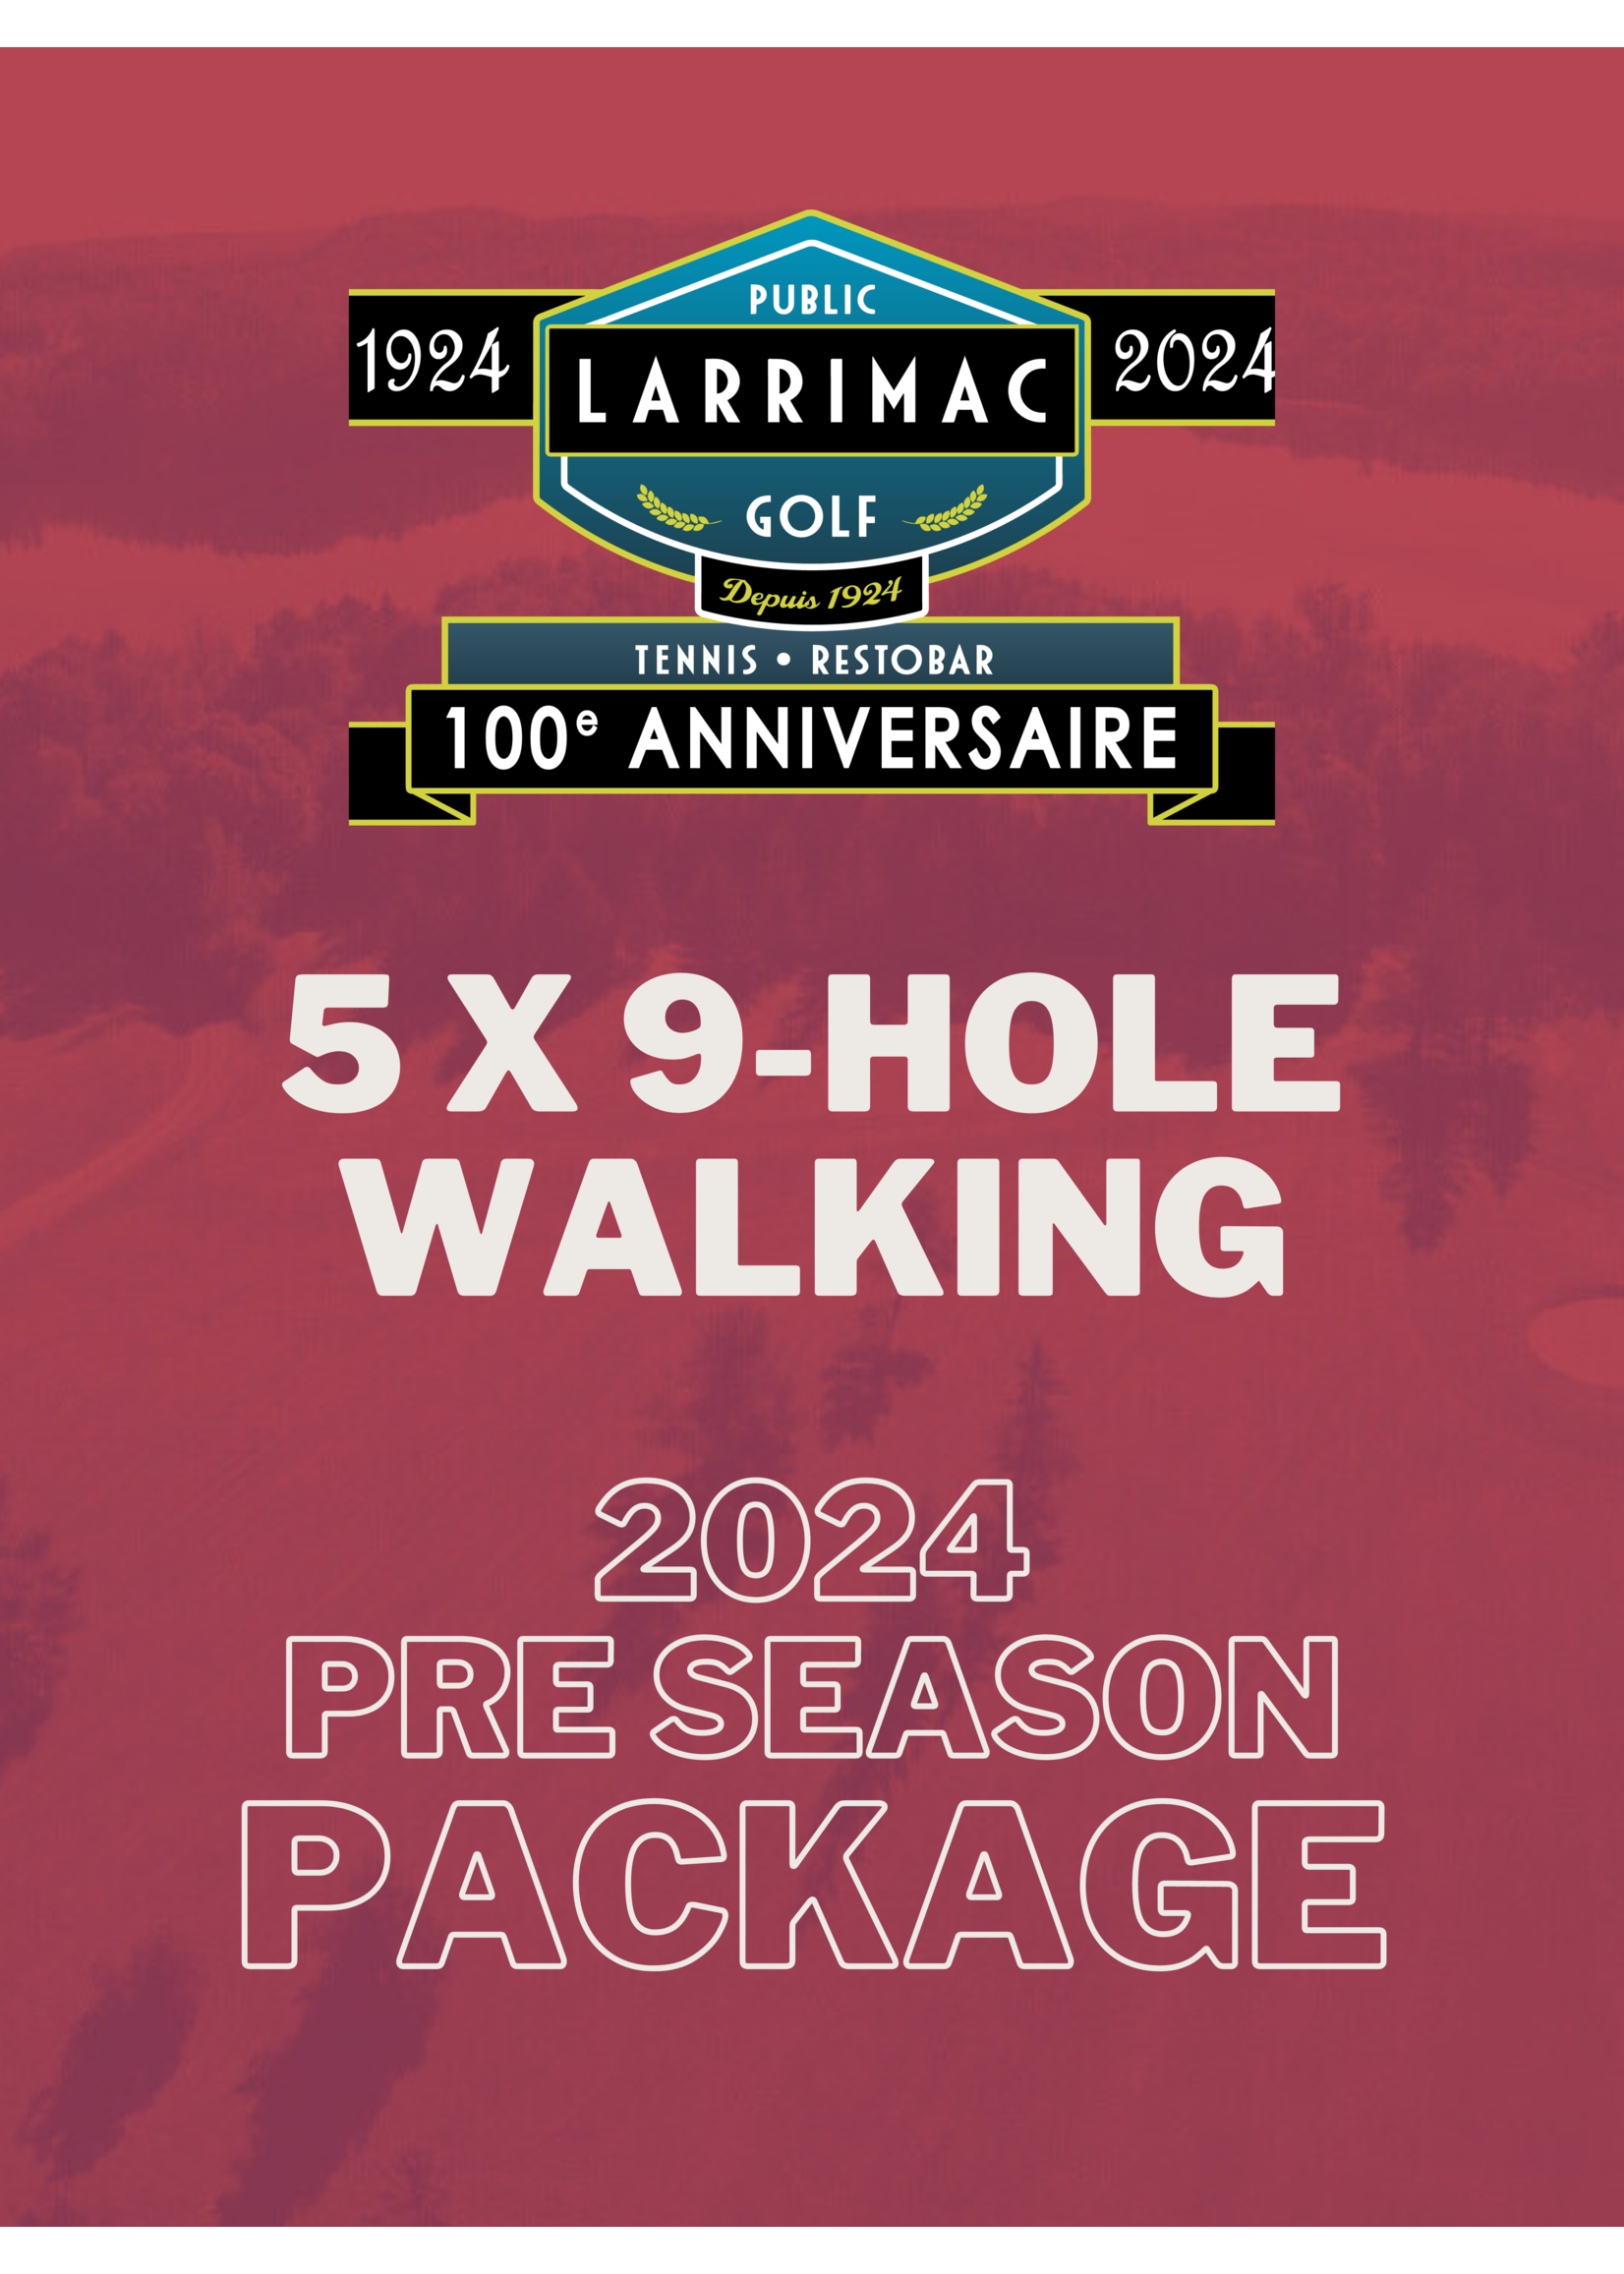 2024 packages 5x 9 Trous Marche Paquet (Avant-saison 2024 18% de réduction !)